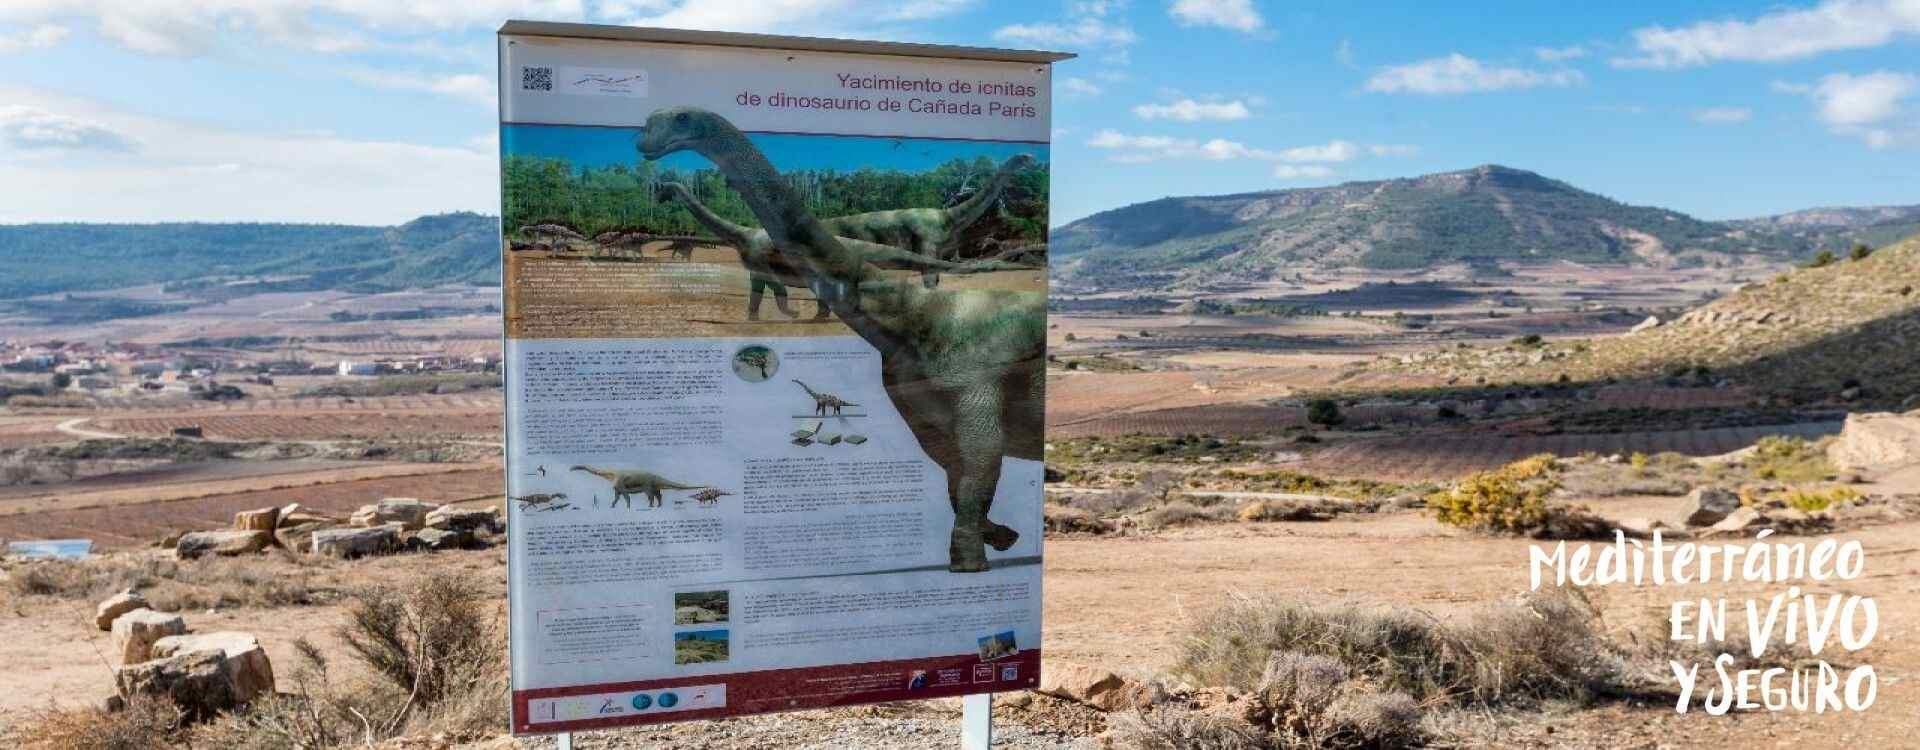 Dinosaur footprint site at Corcolilla